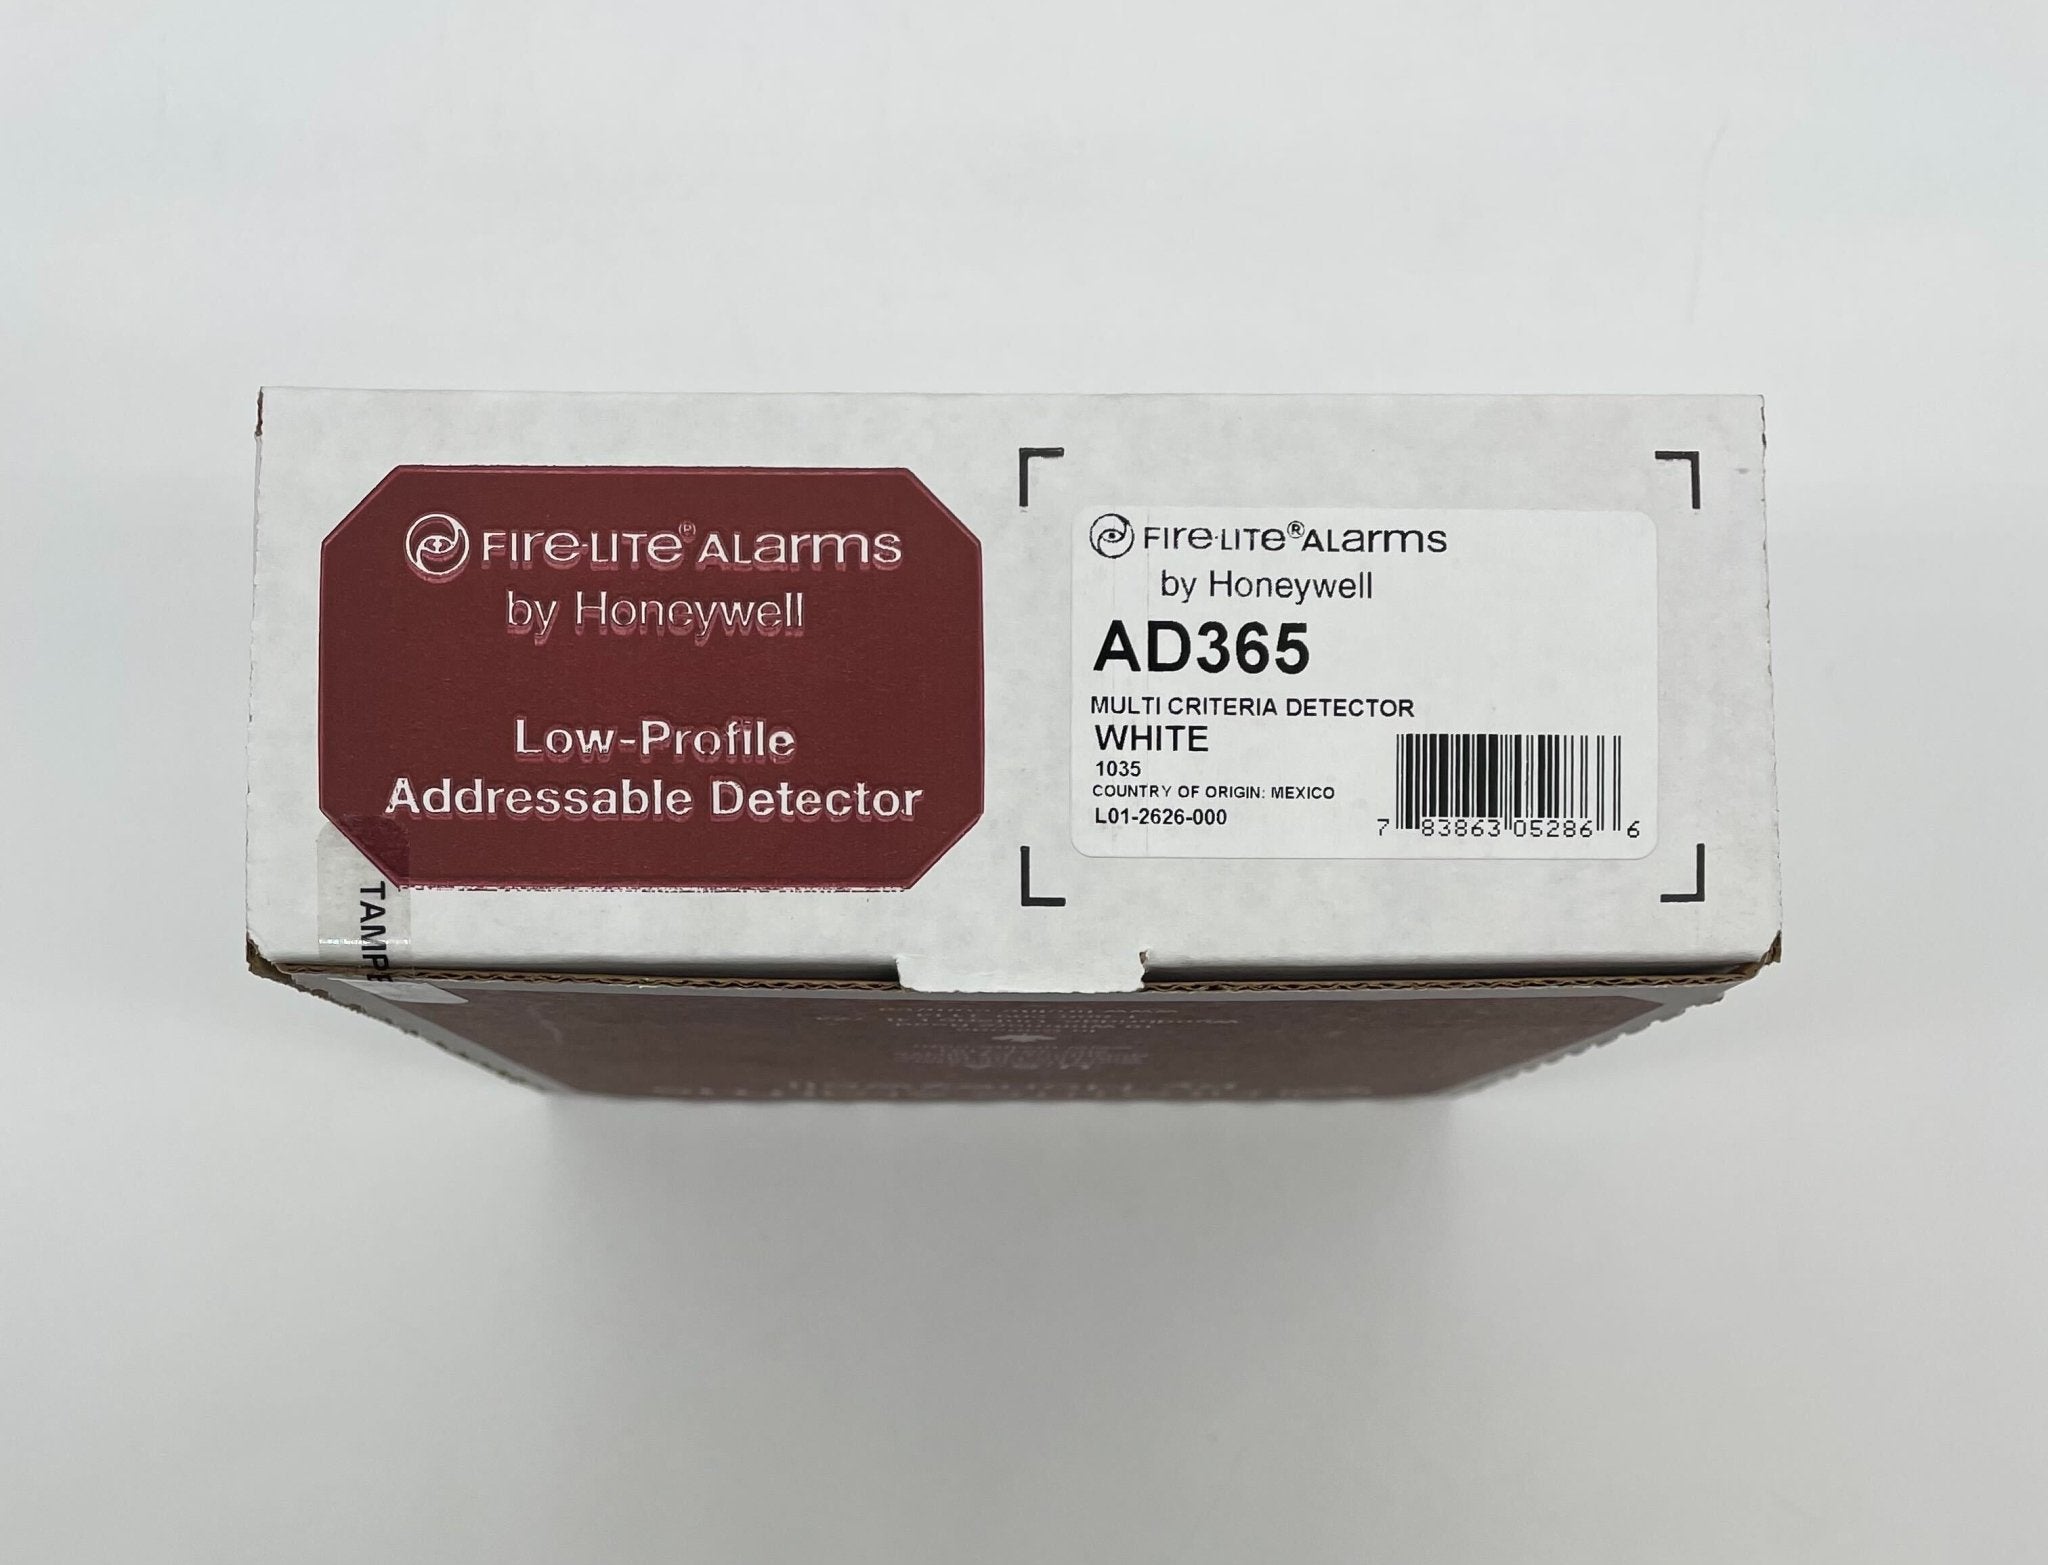 Firelite AD365 - The Fire Alarm Supplier